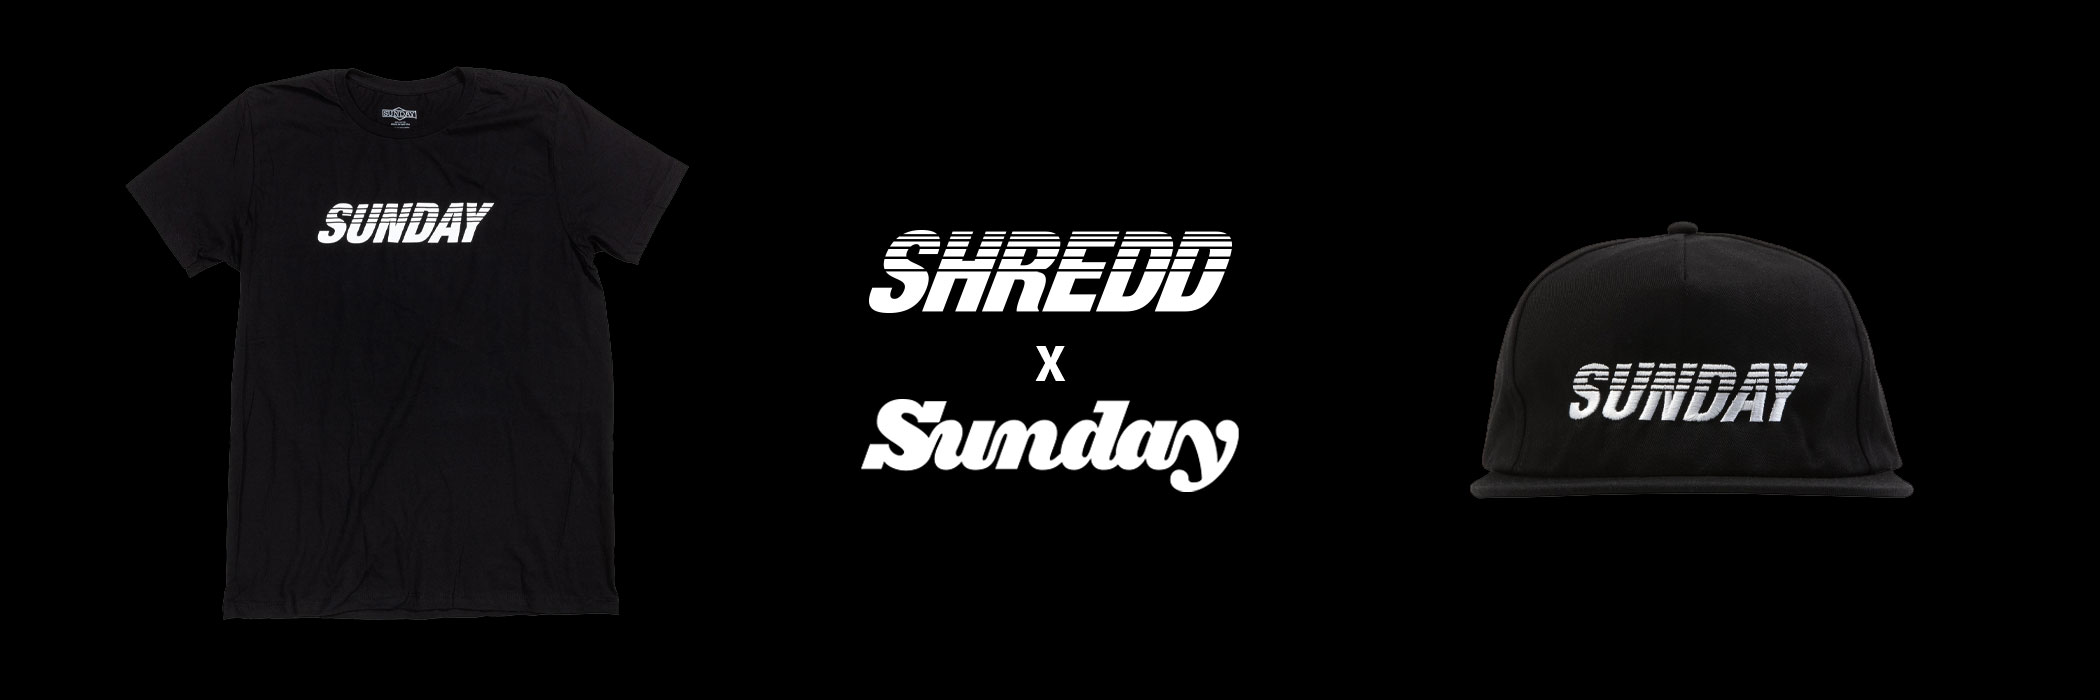 shredd X sunday